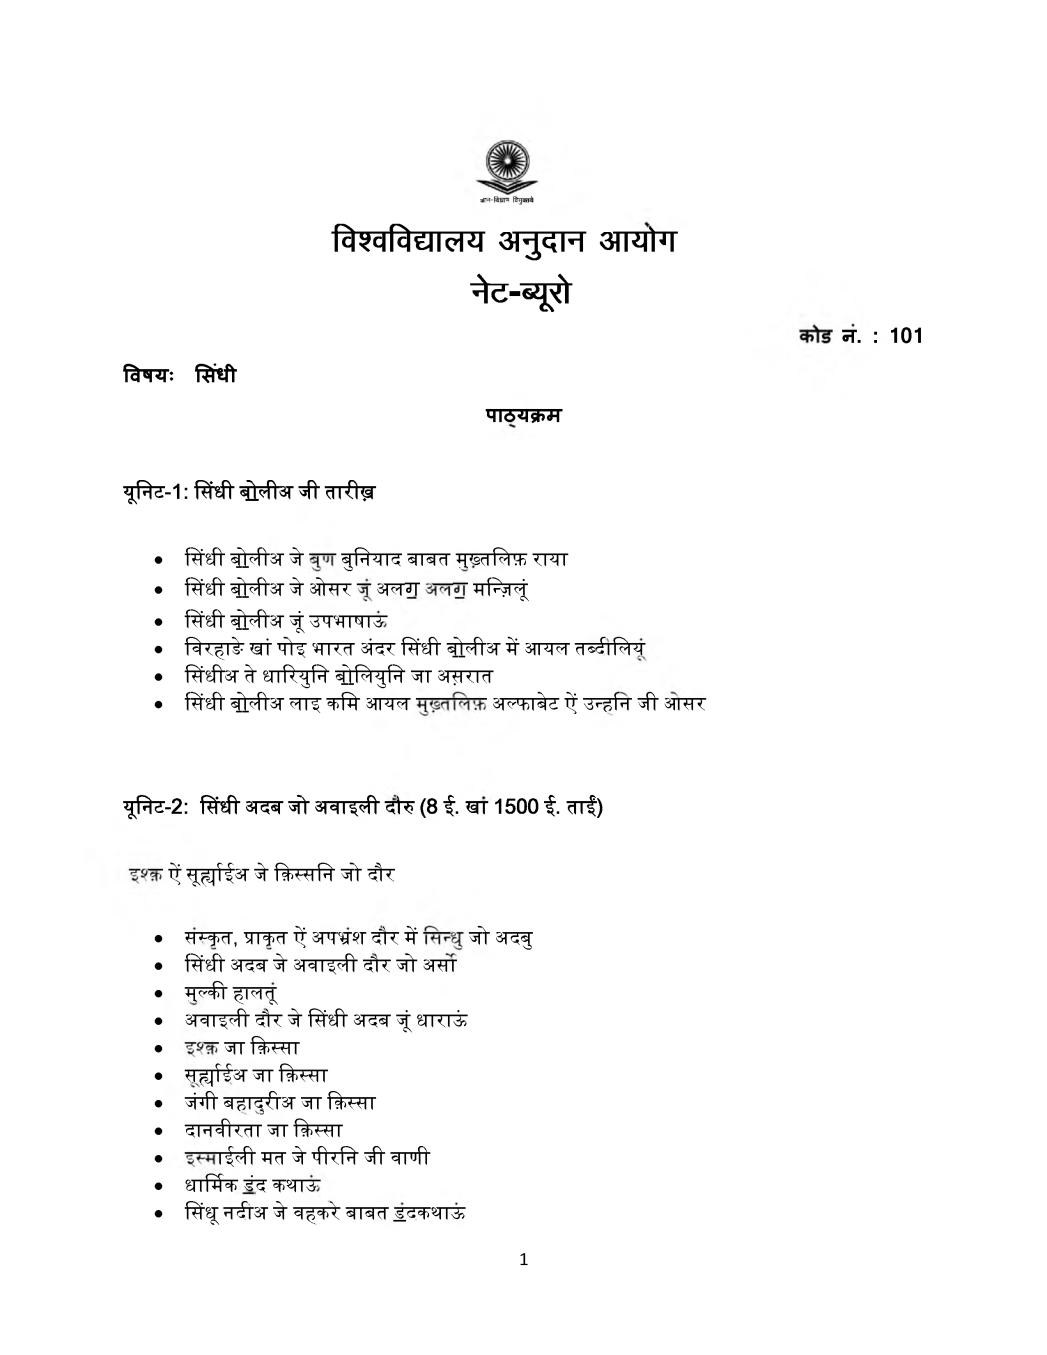 UGC NET Syllabus for Sindhi 2020 in Hindi - Page 1